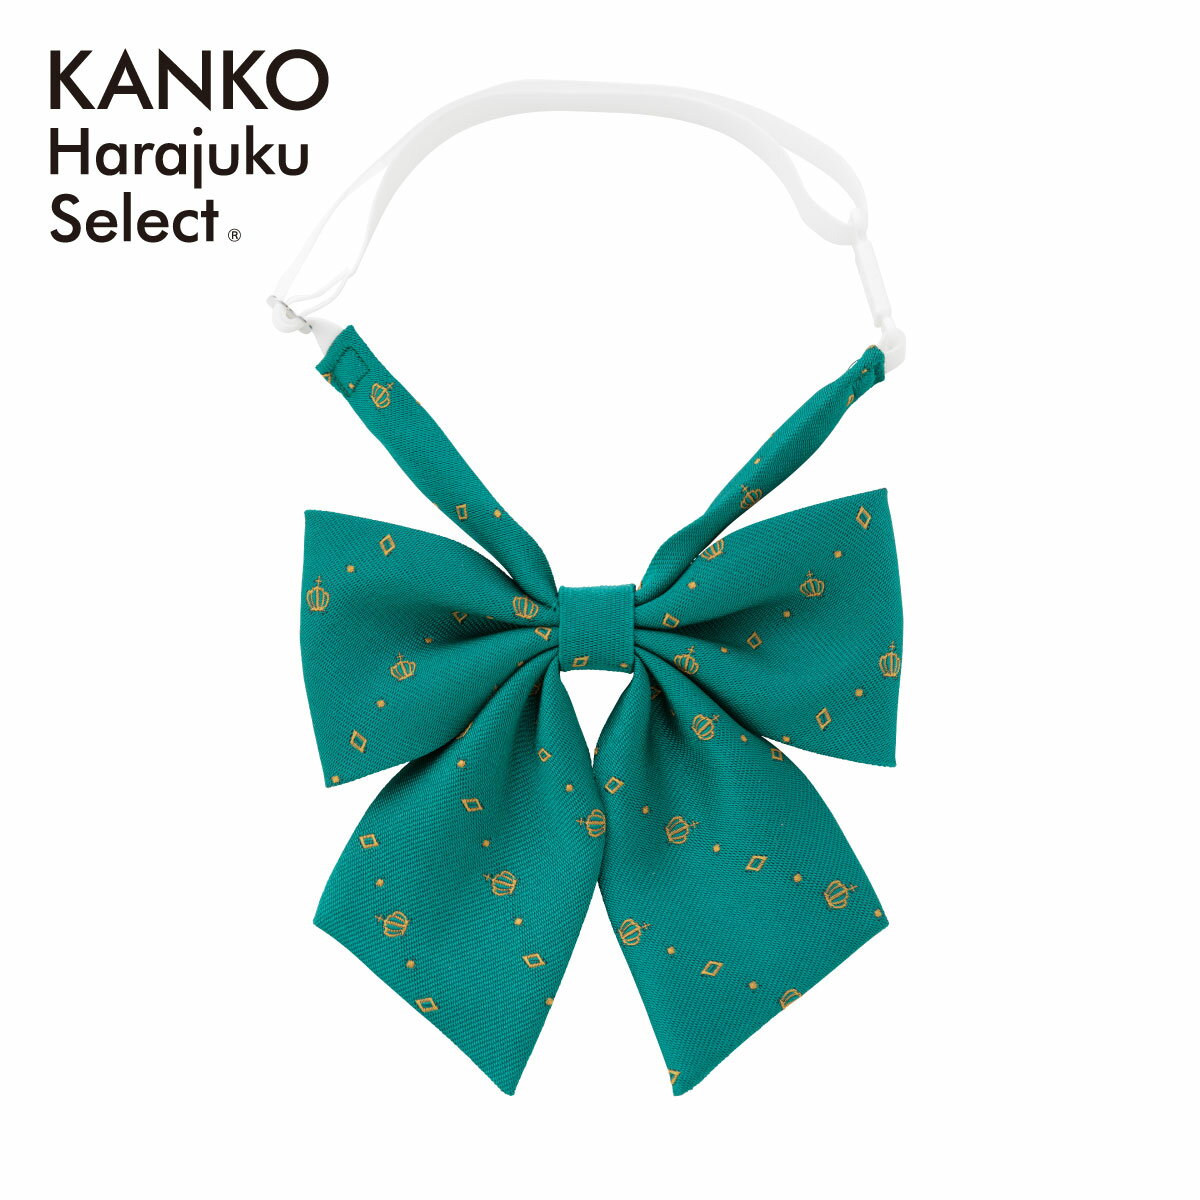 ITEM INFORMATION 商品詳細 ブランド KANKO Harajuku Select / カンコー学生服 素材 ポリエステル100% サイズ F　たて9cm　よこ12cm　ネック34-48cm カラー グリーン 原産国 日本製 特長 クラウン柄のリボンです。リボンのカラーは顔周りを明るく見せてくれて、大人可愛い制服コーデにぴったりです！ 取り扱い ドライクリーニング 備考 この商品は当店他店舗でも販売しております。 在庫数の更新は随時行っておりますが、お買い上げいただいた商品が、品切れになってしまうこともございます。その場合、お客様には必ず連絡をいたしますが、万が一入荷予定がない場合は、キャンセルさせていただく場合もございますことをあらかじめご了承ください。 素材の注意書き お使いのモニターの発色具合によって、実際のものと色が異なる場合がございます。